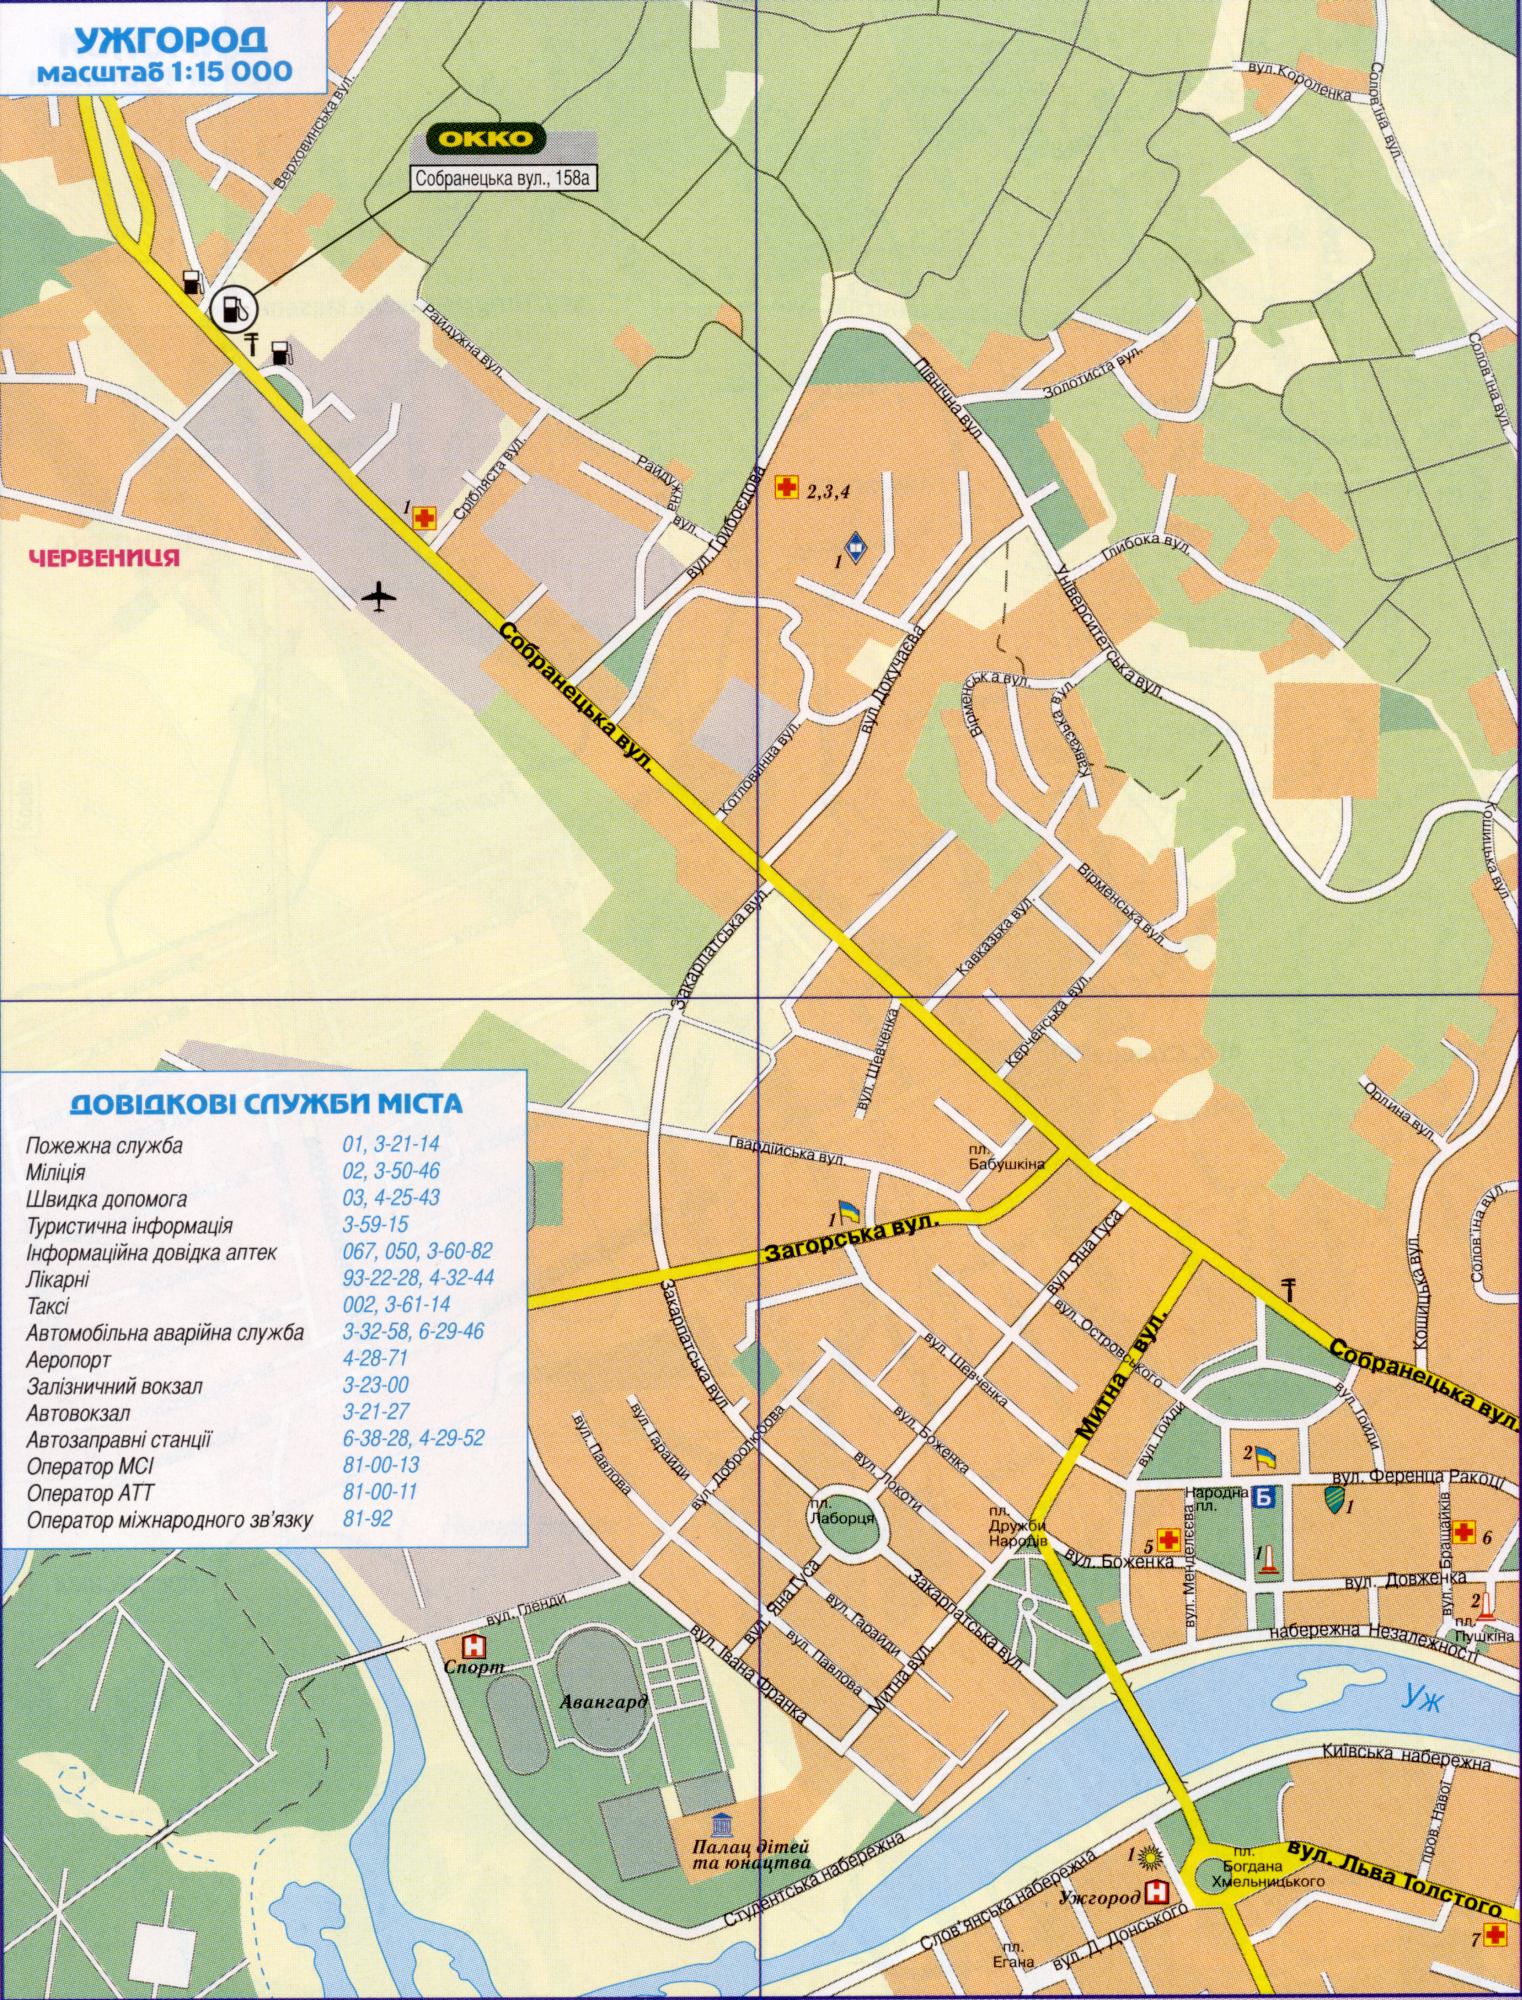 Карта Ужгорода докладна (Україна карта м.Ужгород) в 1 см 150 метрів. Завантажити безкоштовно докладну карту автомобільних доріг